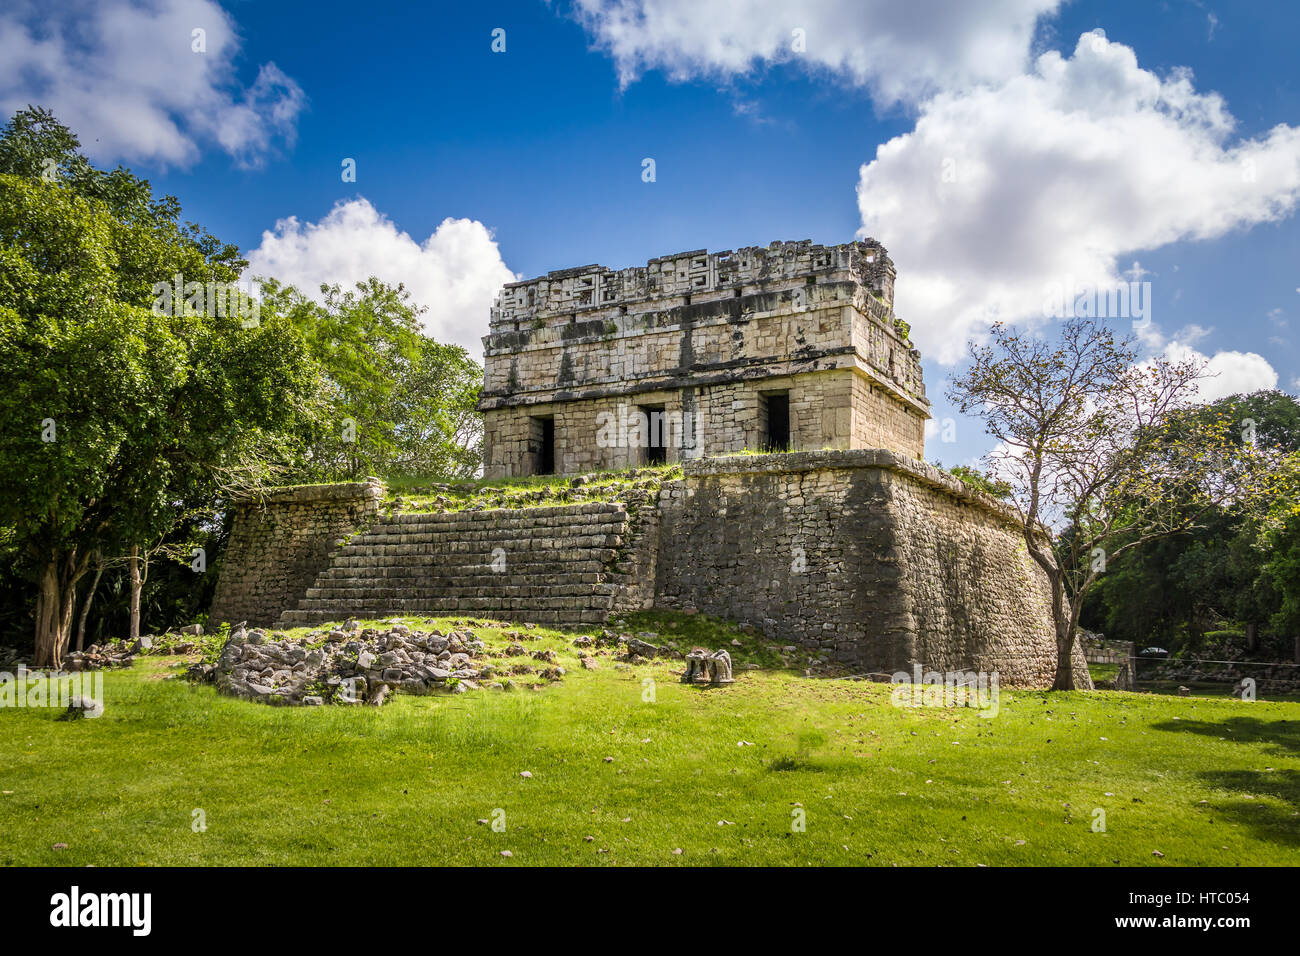 Ruines mayas de Chichen Itza - Yucatan, Mexique Banque D'Images